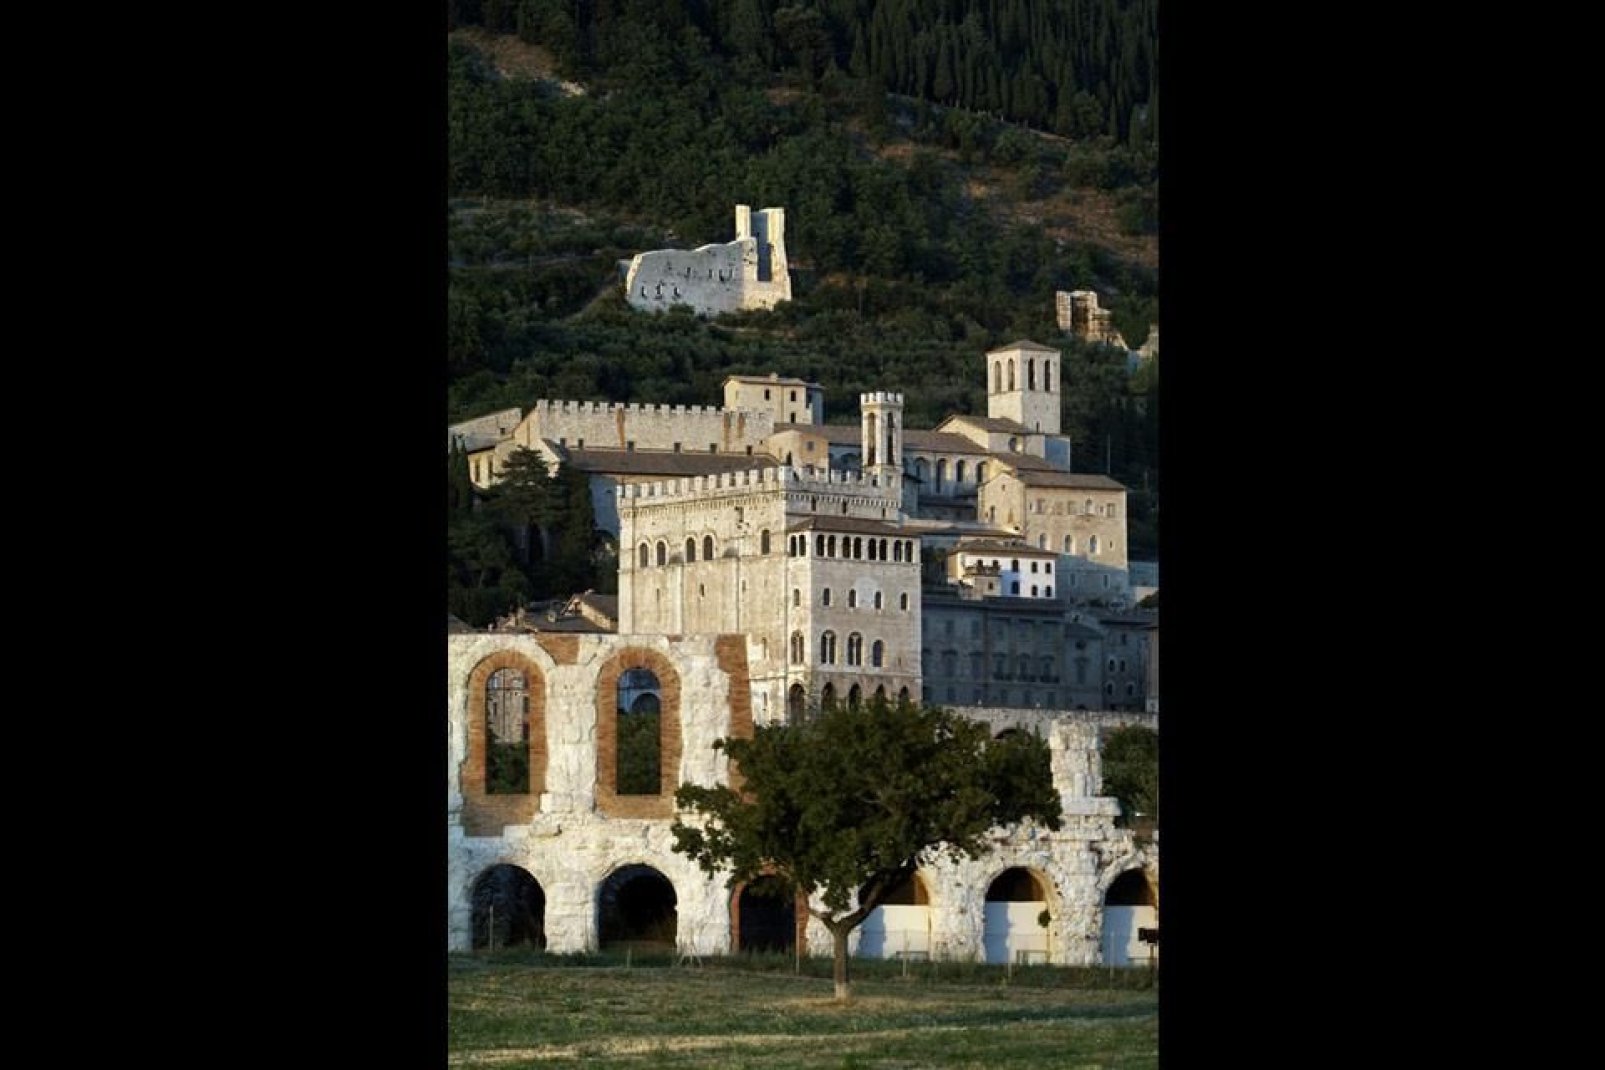 La historia de Gubbio ha ido acompañada de la prosperidad y el poder, sobre todo gracias a su ubicación.